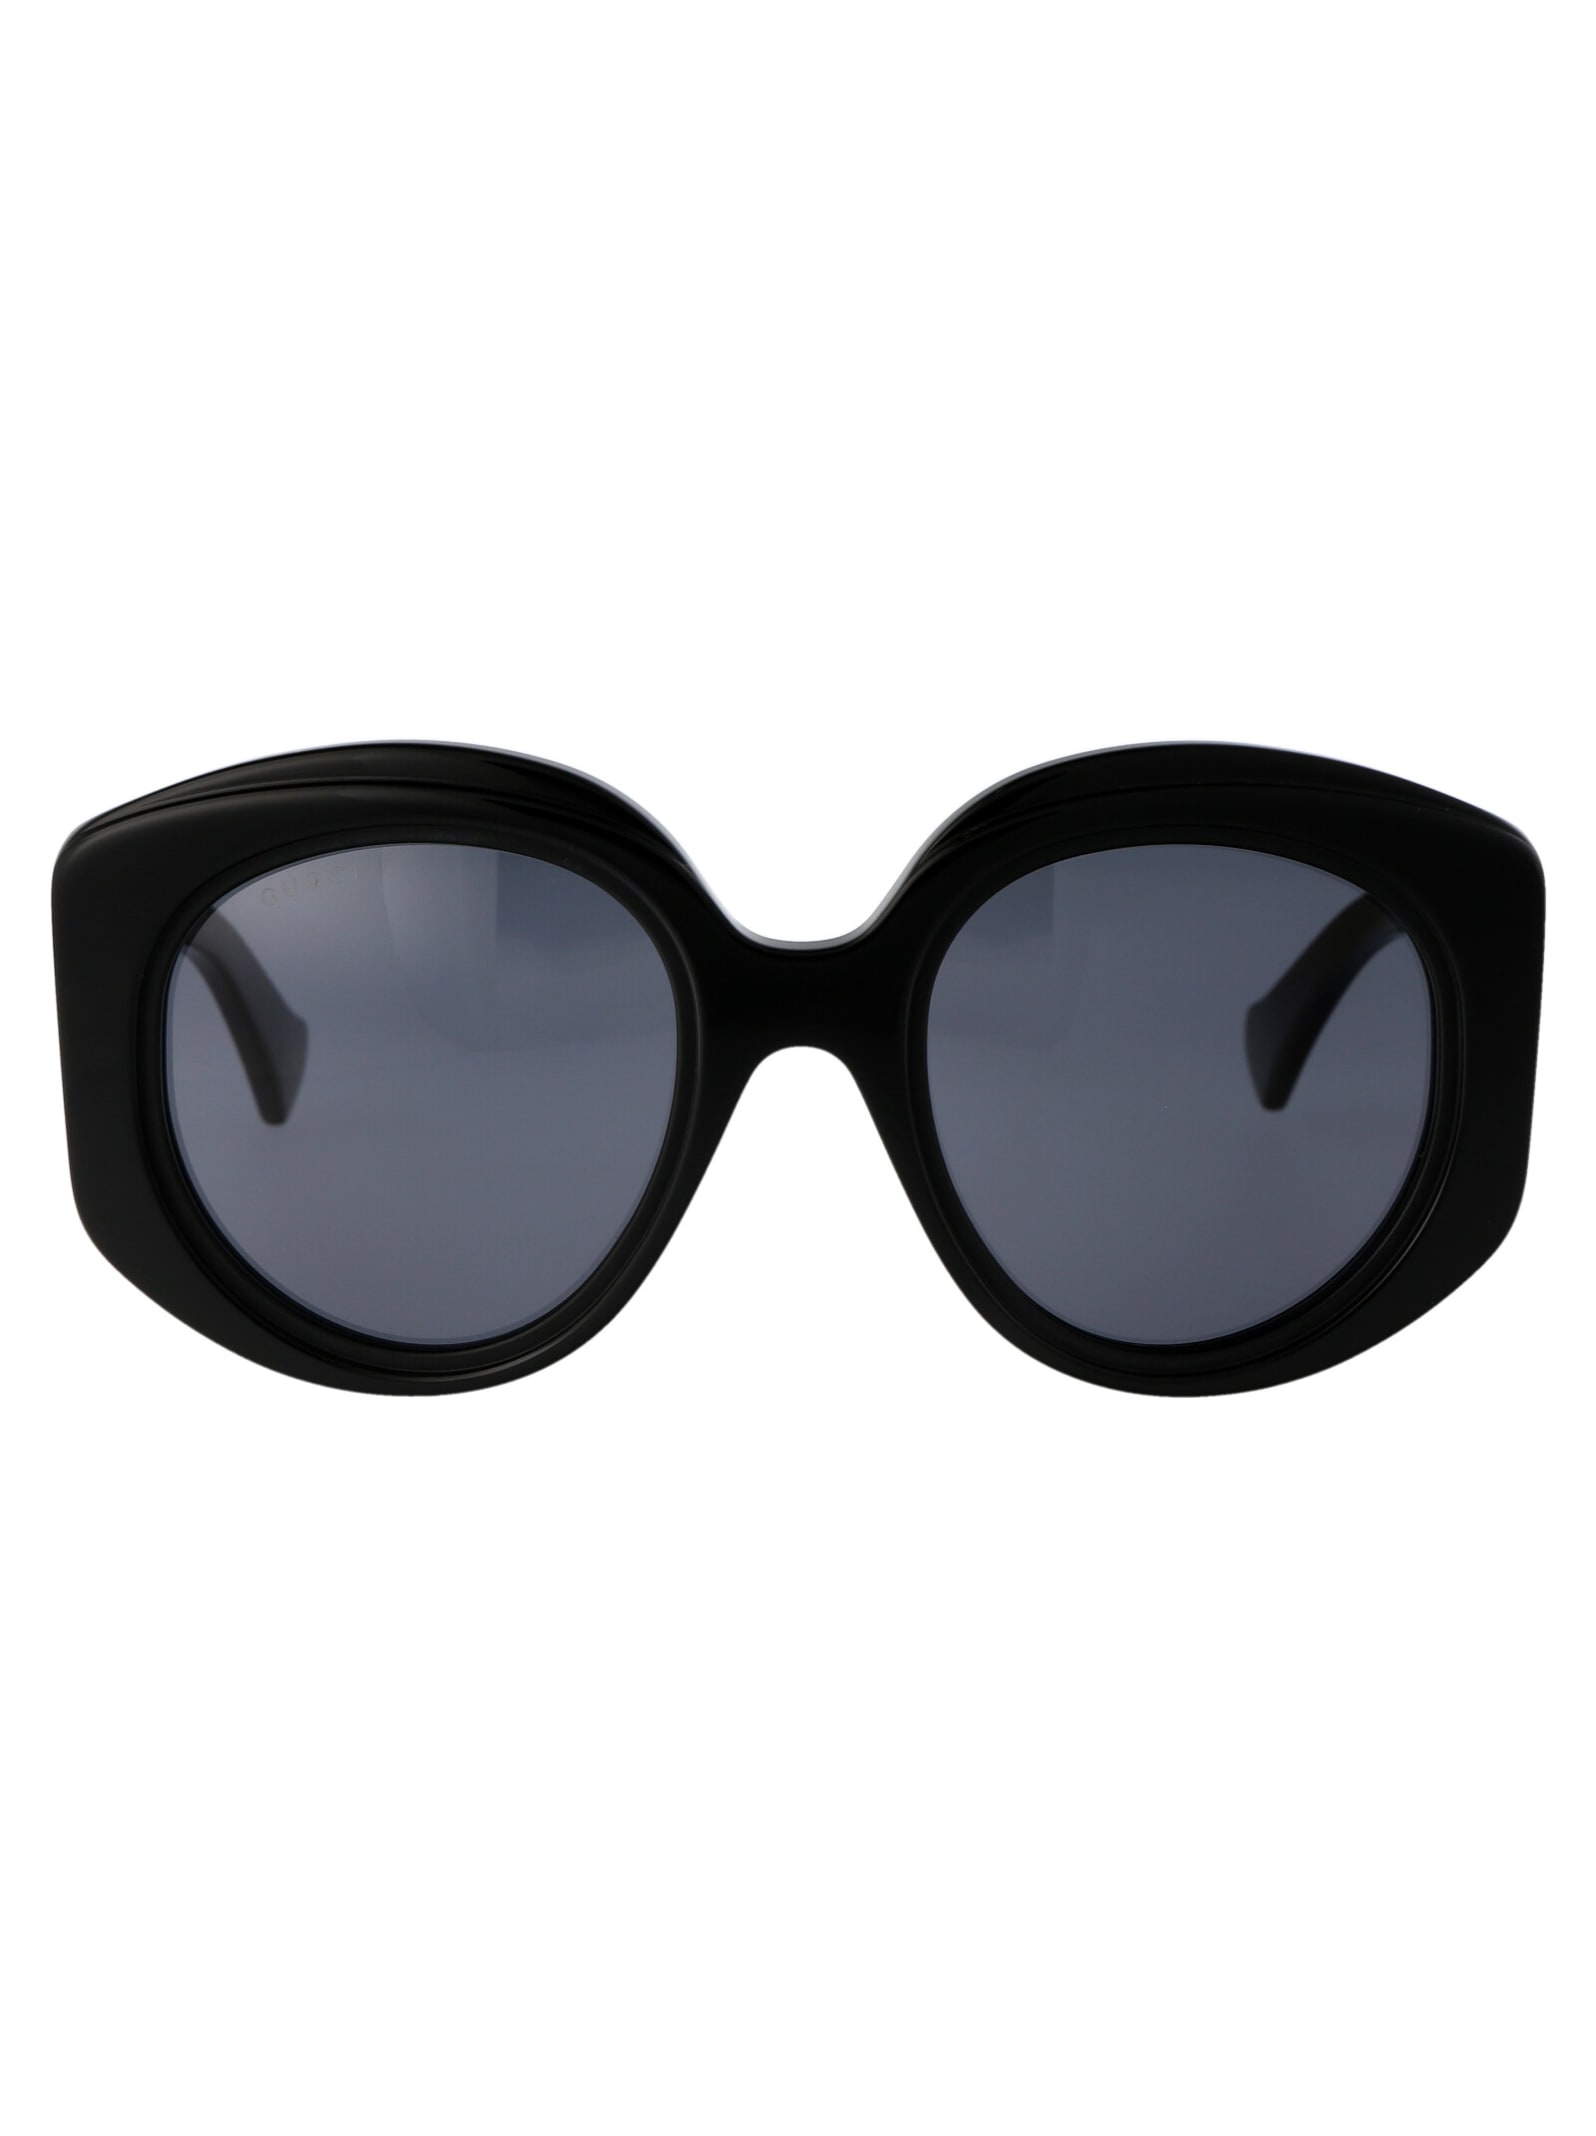 Gucci Gg1308s Round Sunglasses Female Black In 001 Black Black Grey ...